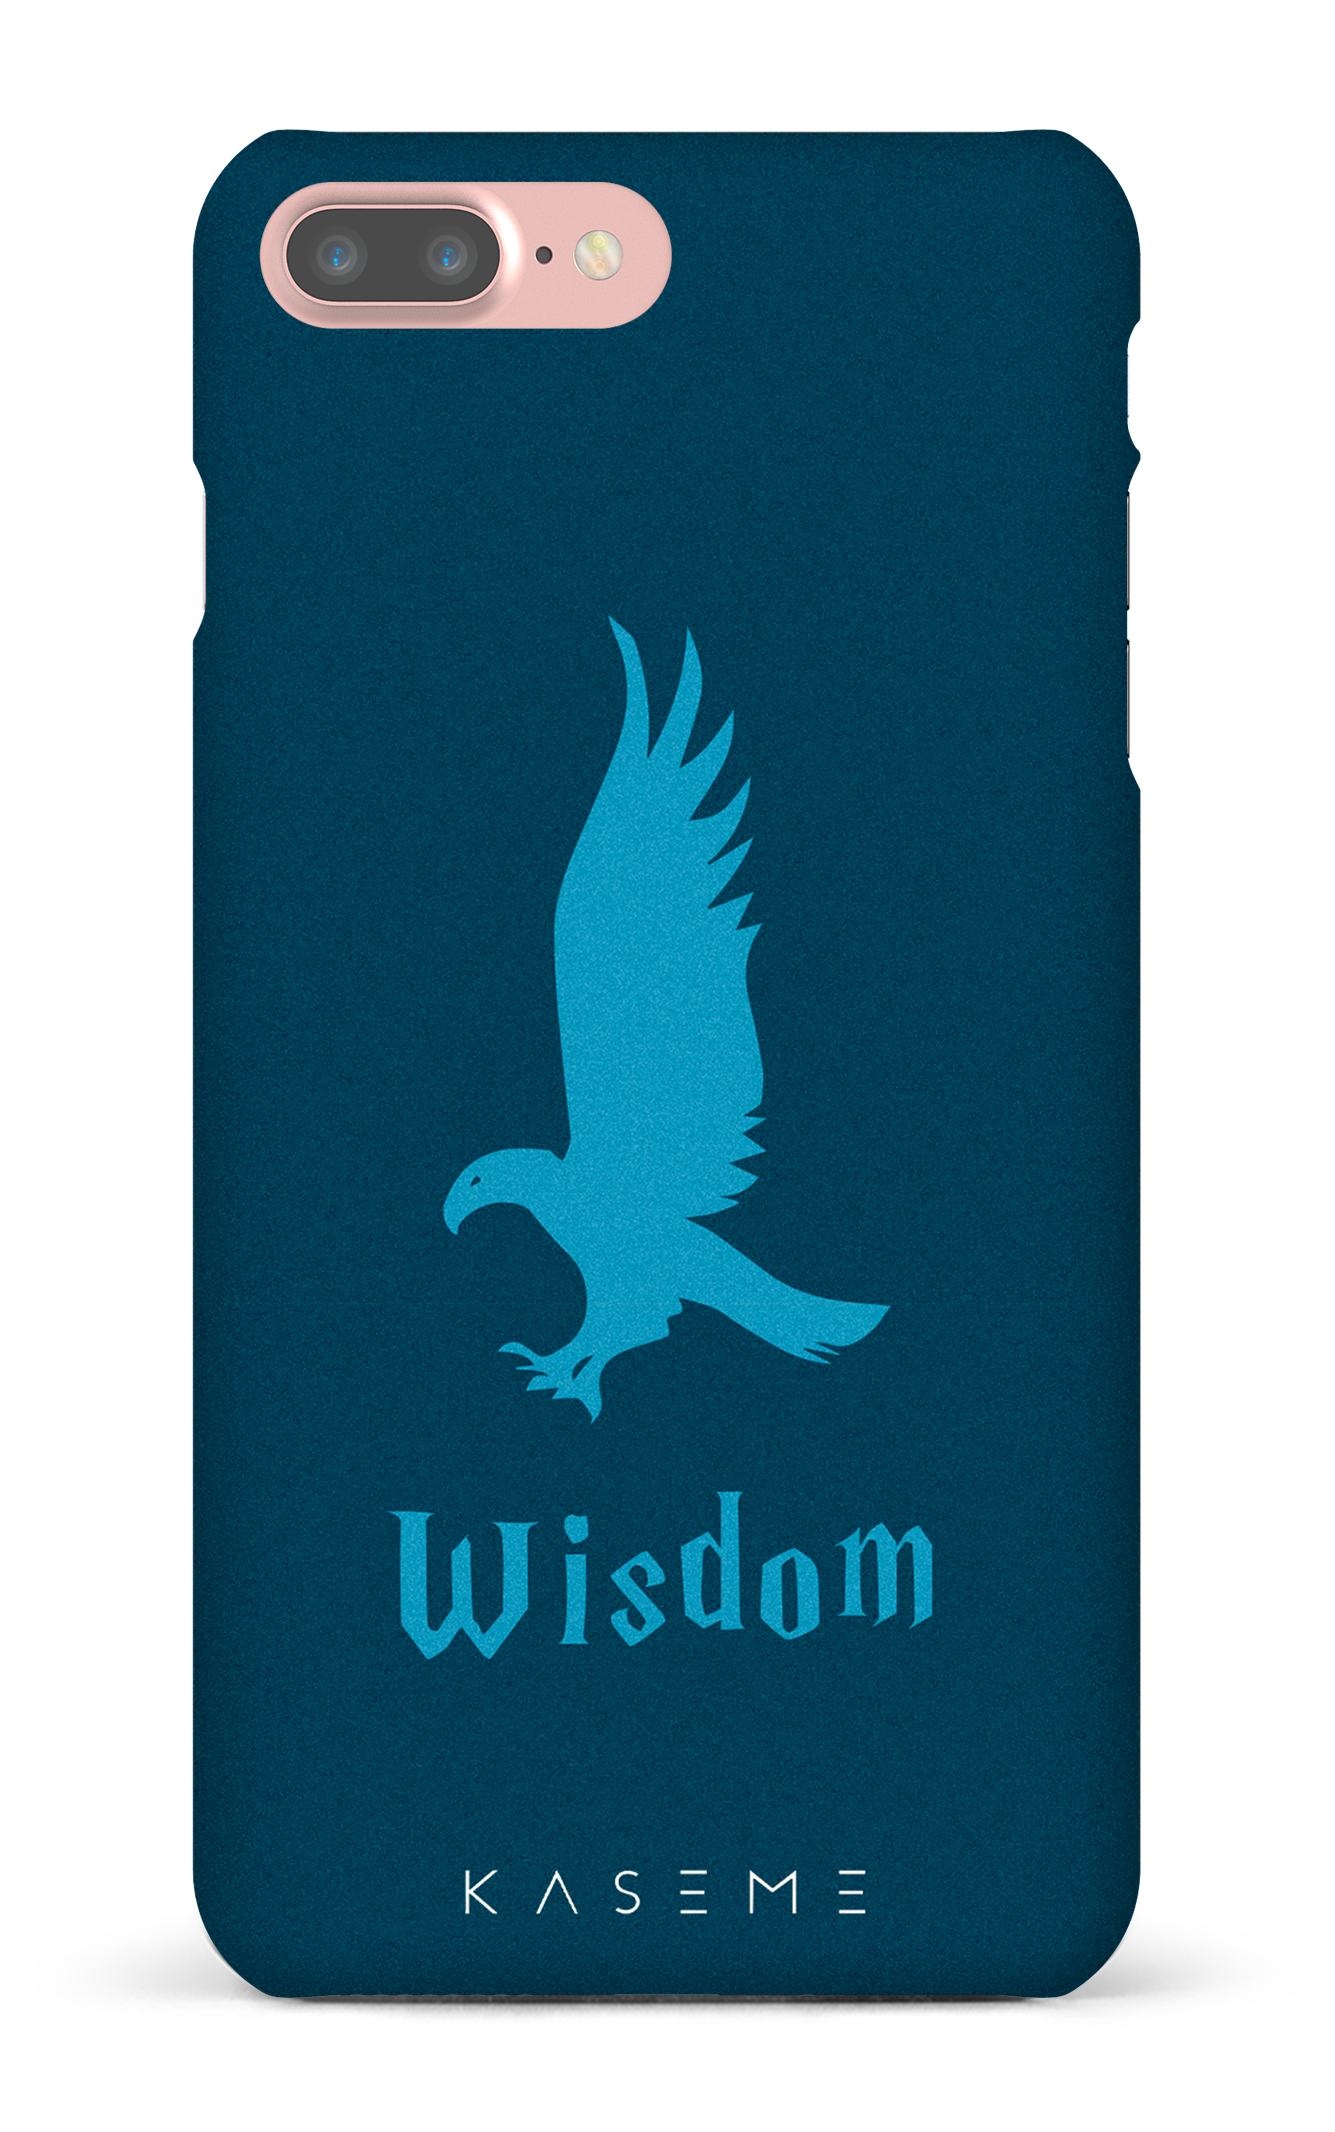 Wisdom - iPhone 7 Plus